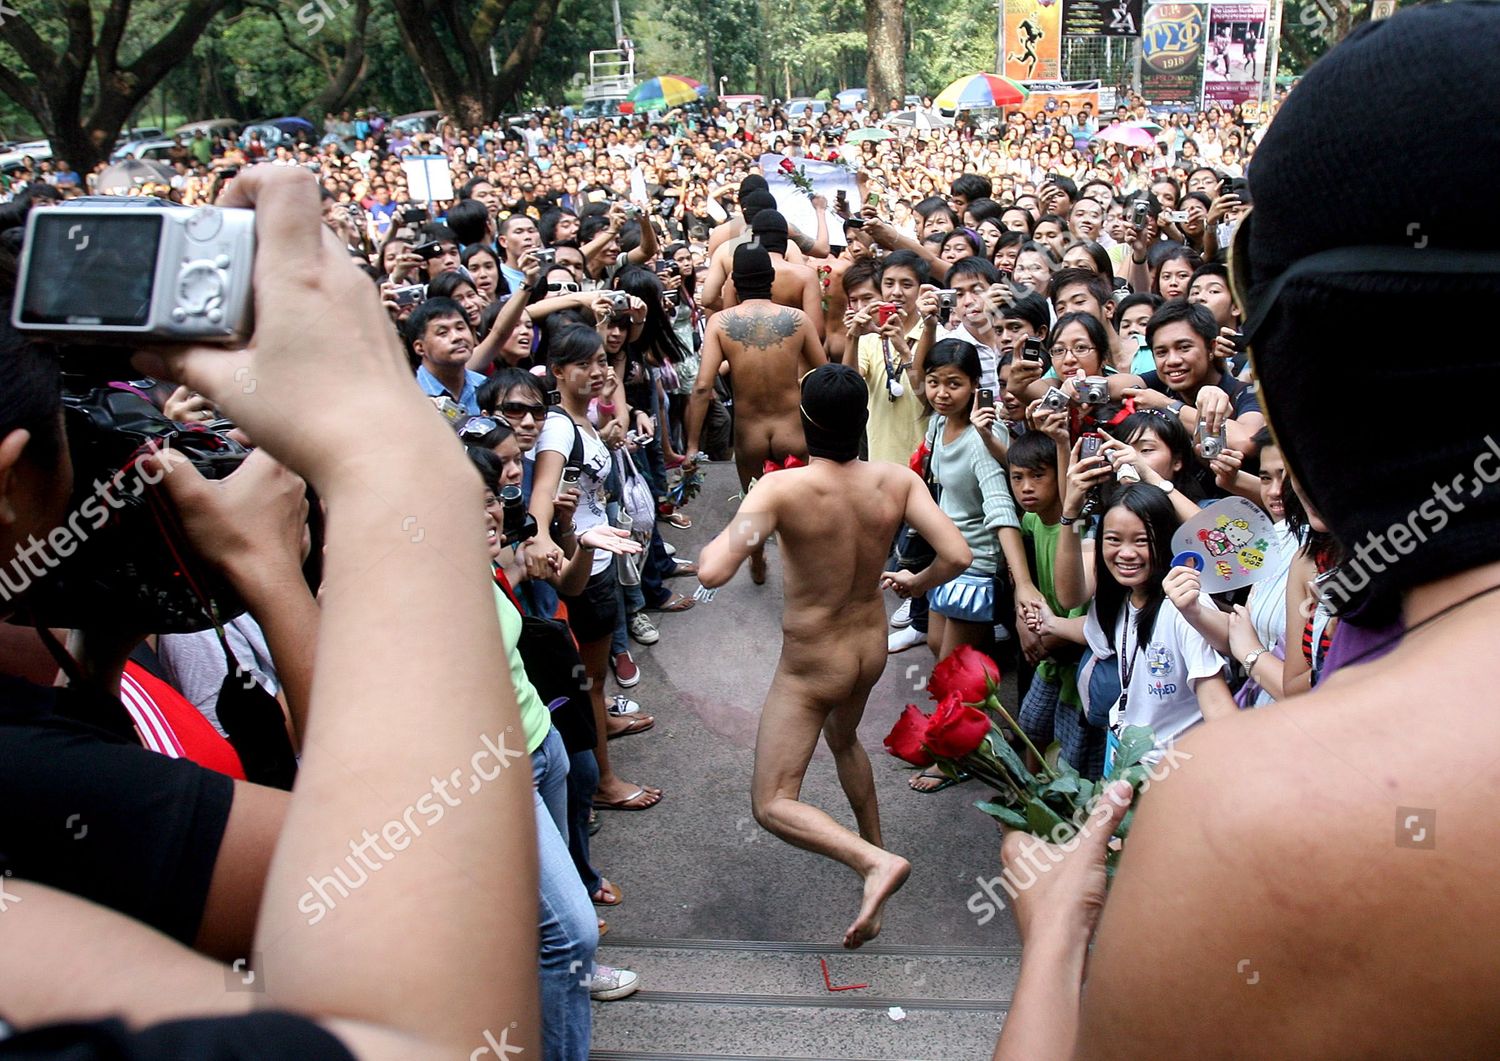 Naked Run Public